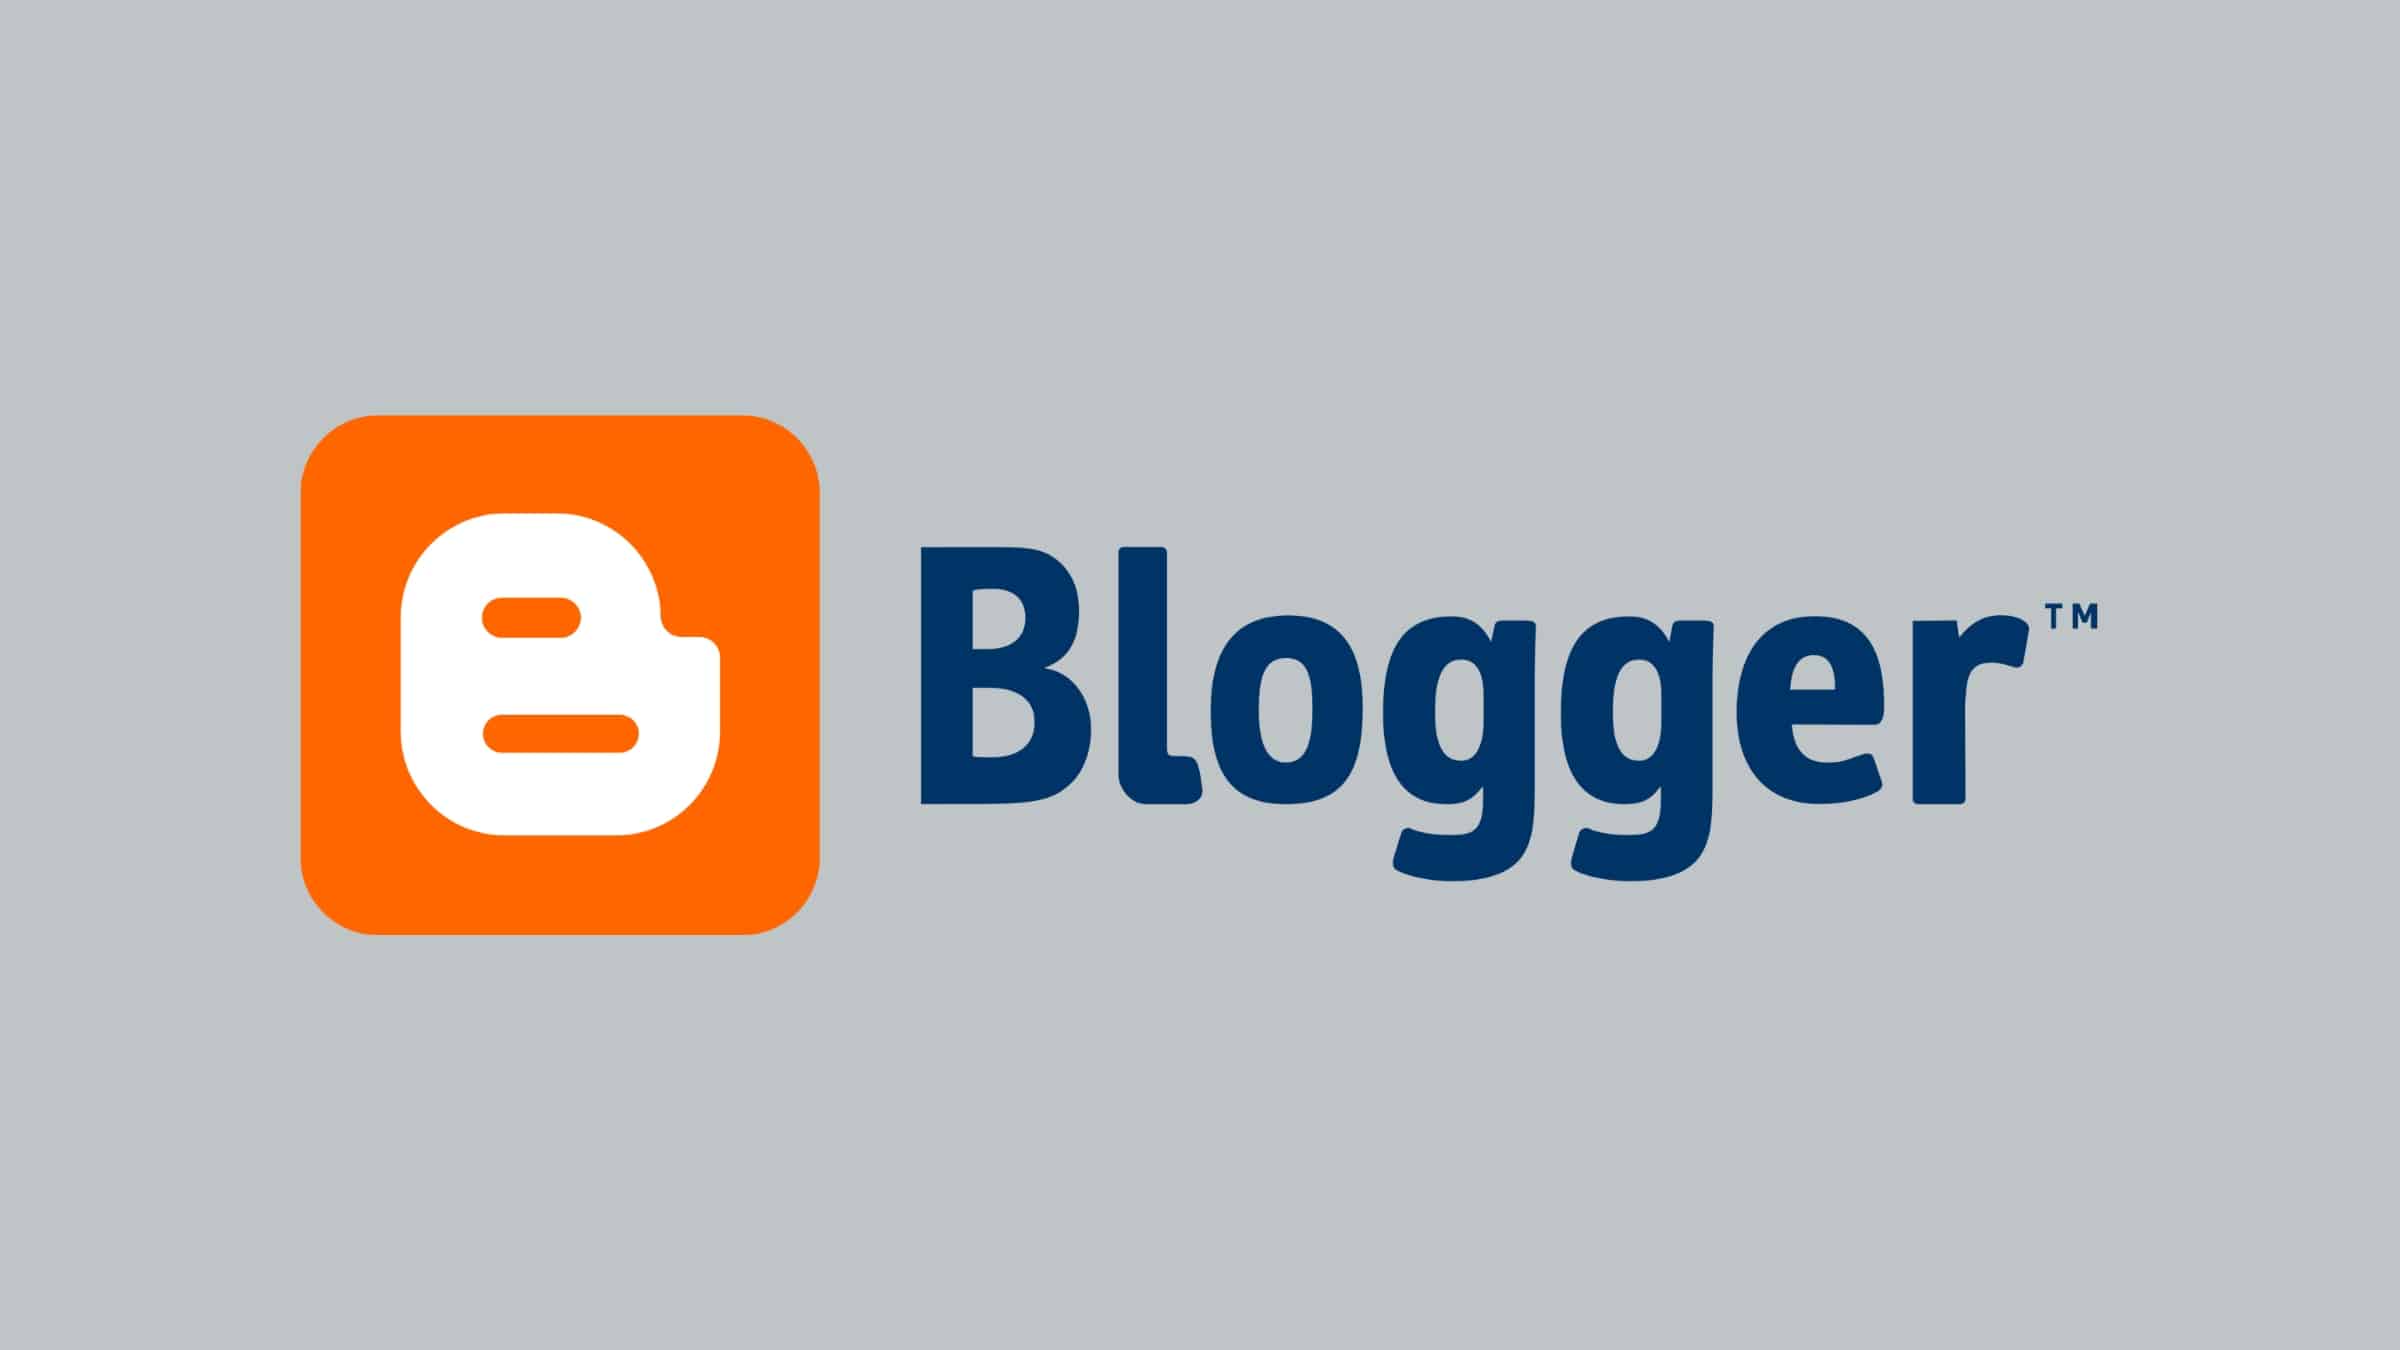 conheca-as-melhores-alternativas-gratuitas-e-de-codigo-aberto-para-o-blogger